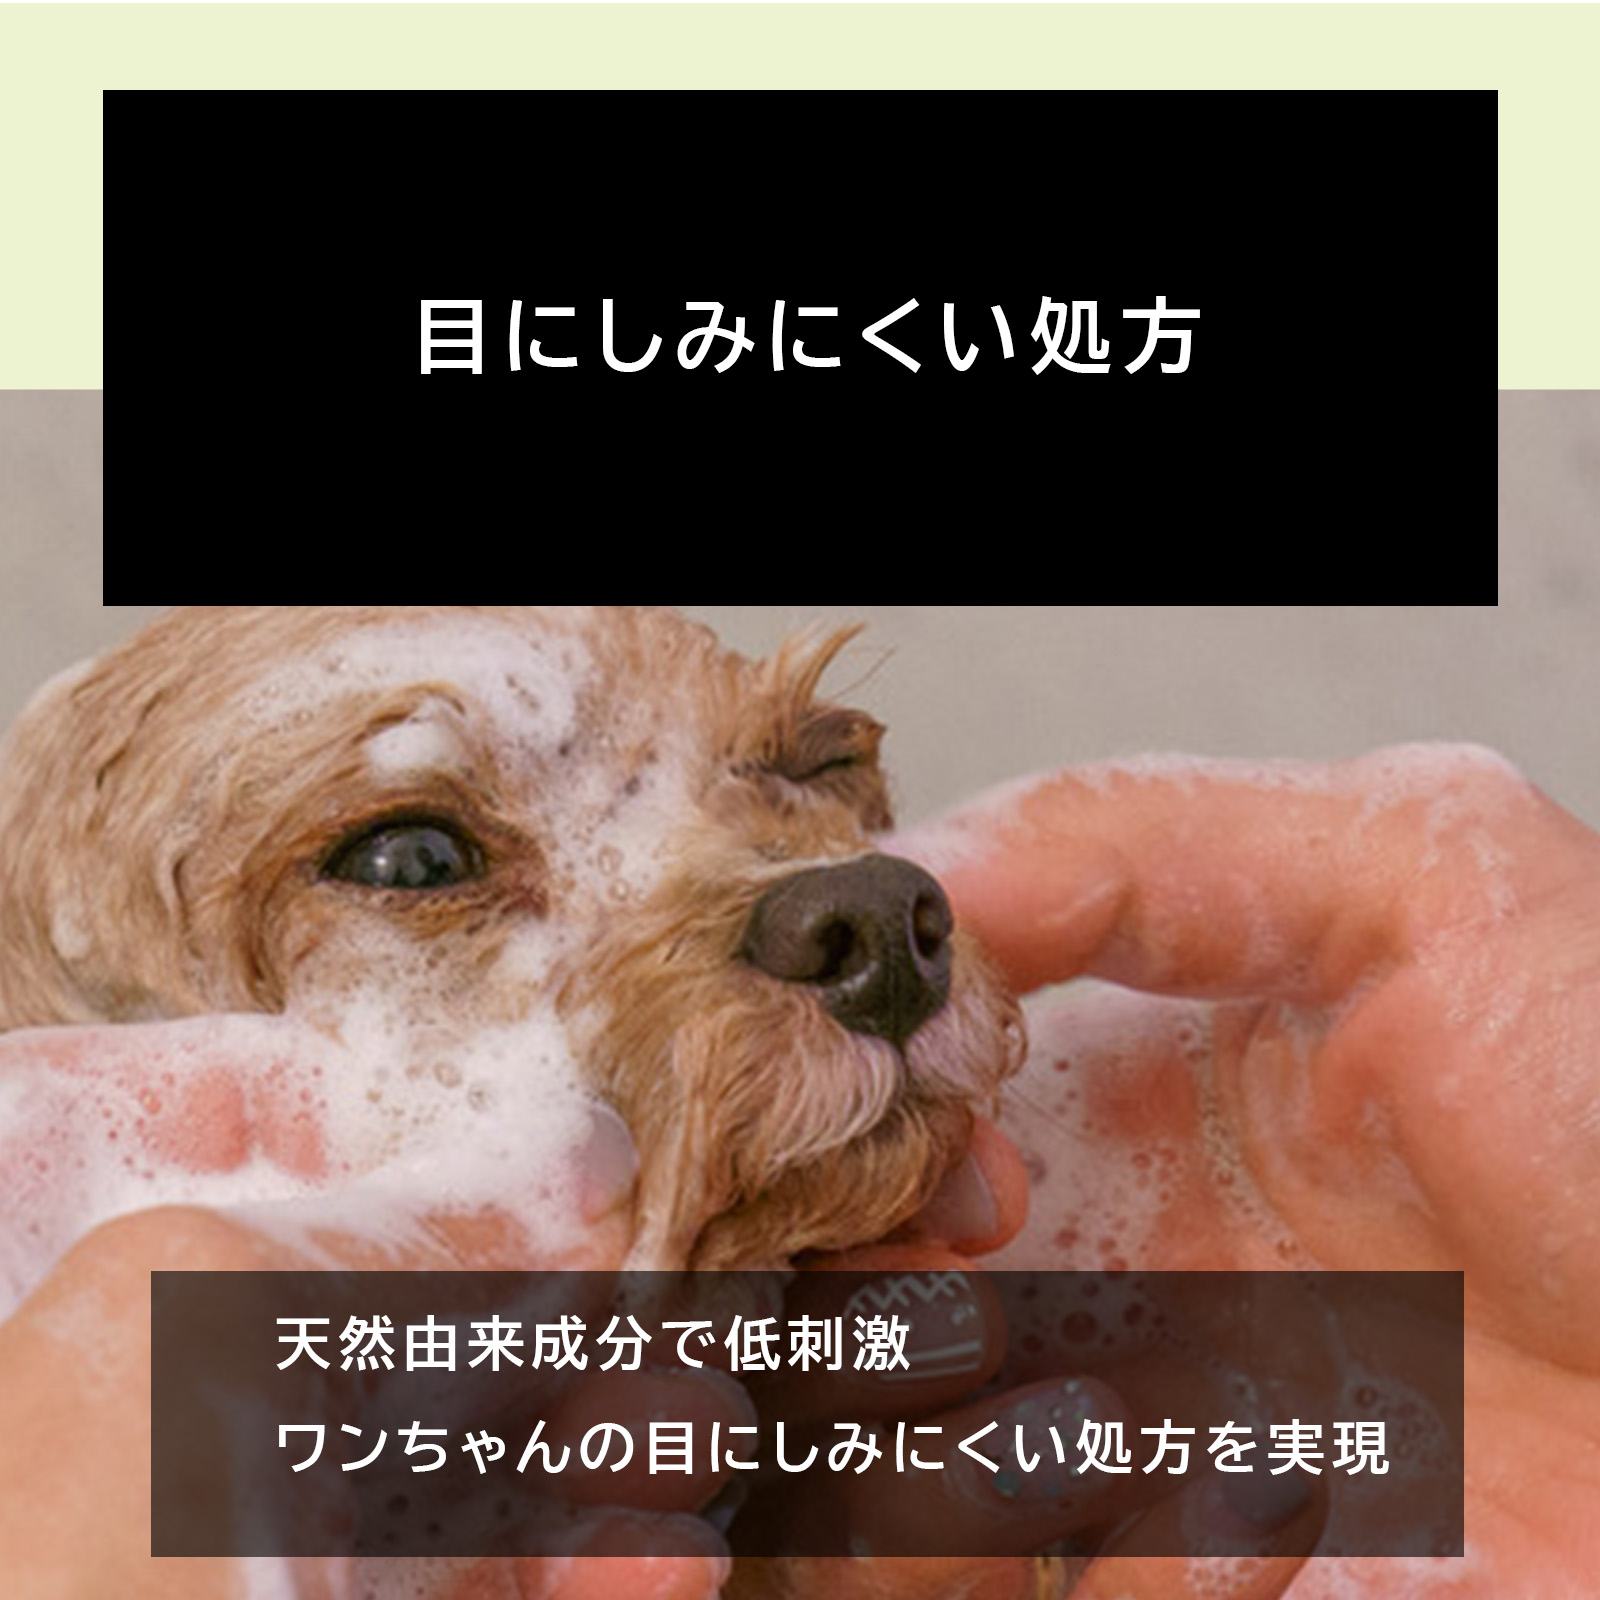 犬  シャンプー  トリートメント 無添加 オーガニック 各250ml 日本製 「全成分表示 人間規格」「泡切れ 目にしみにくい」「 合成香料不使用」 THE ANIMAL ORGANICS 犬用 猫用 シャンプー リンス セット ザ アニマル オーガニック